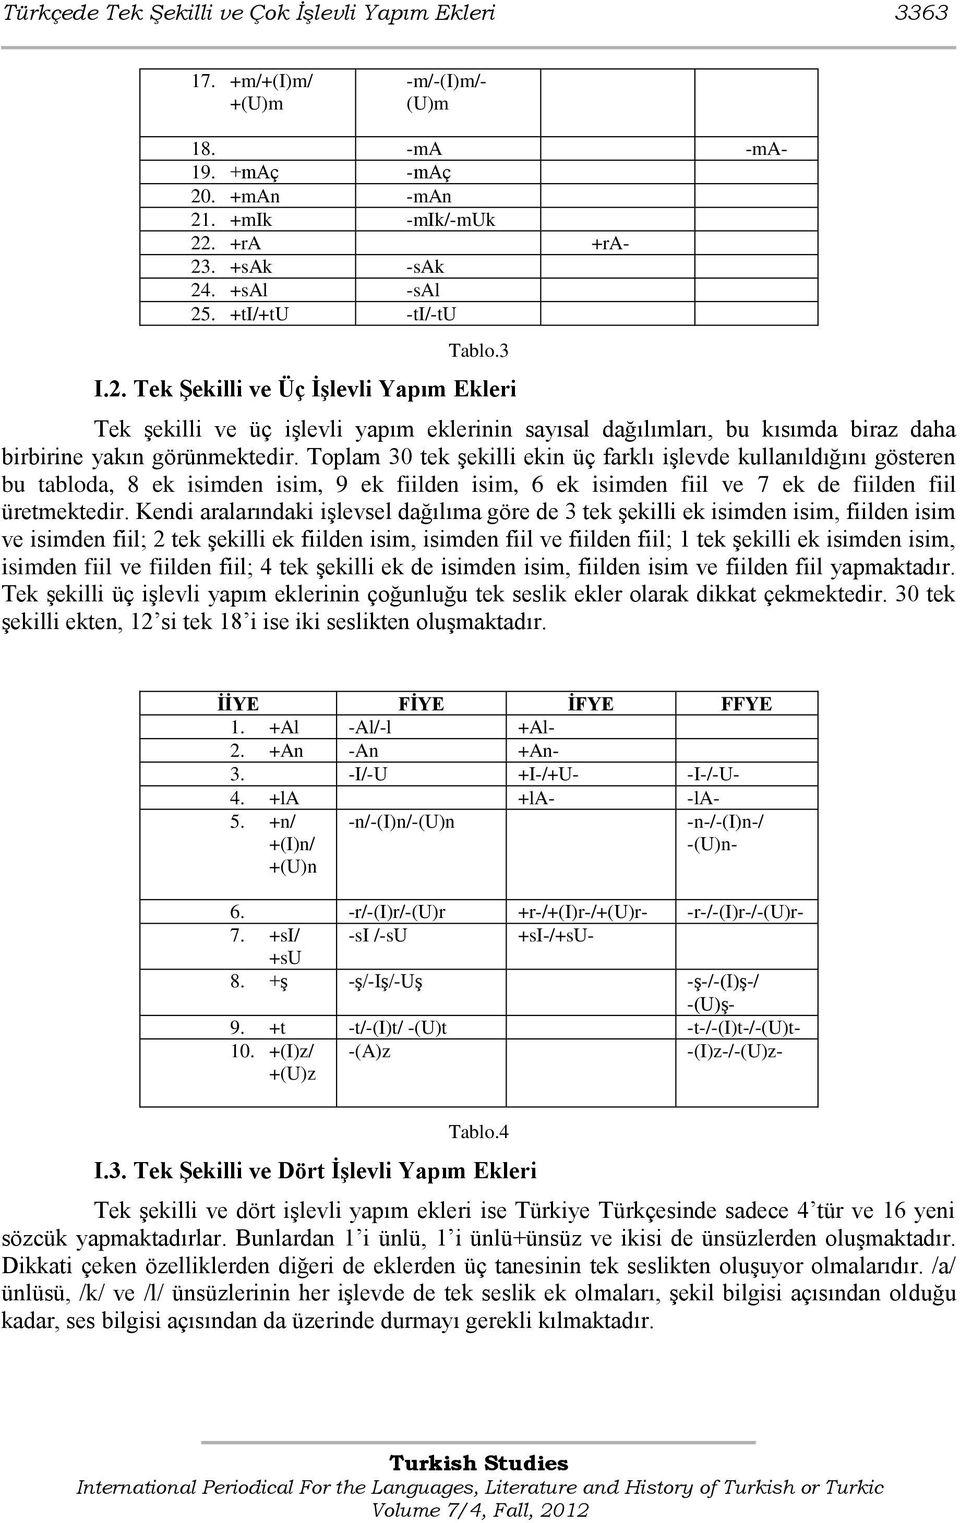 Toplam 30 tek Ģekilli ekin üç farklı iģlevde kullanıldığını gösteren bu tabloda, 8 ek isimden isim, 9 ek fiilden isim, 6 ek isimden fiil ve 7 ek de fiilden fiil üretmektedir.